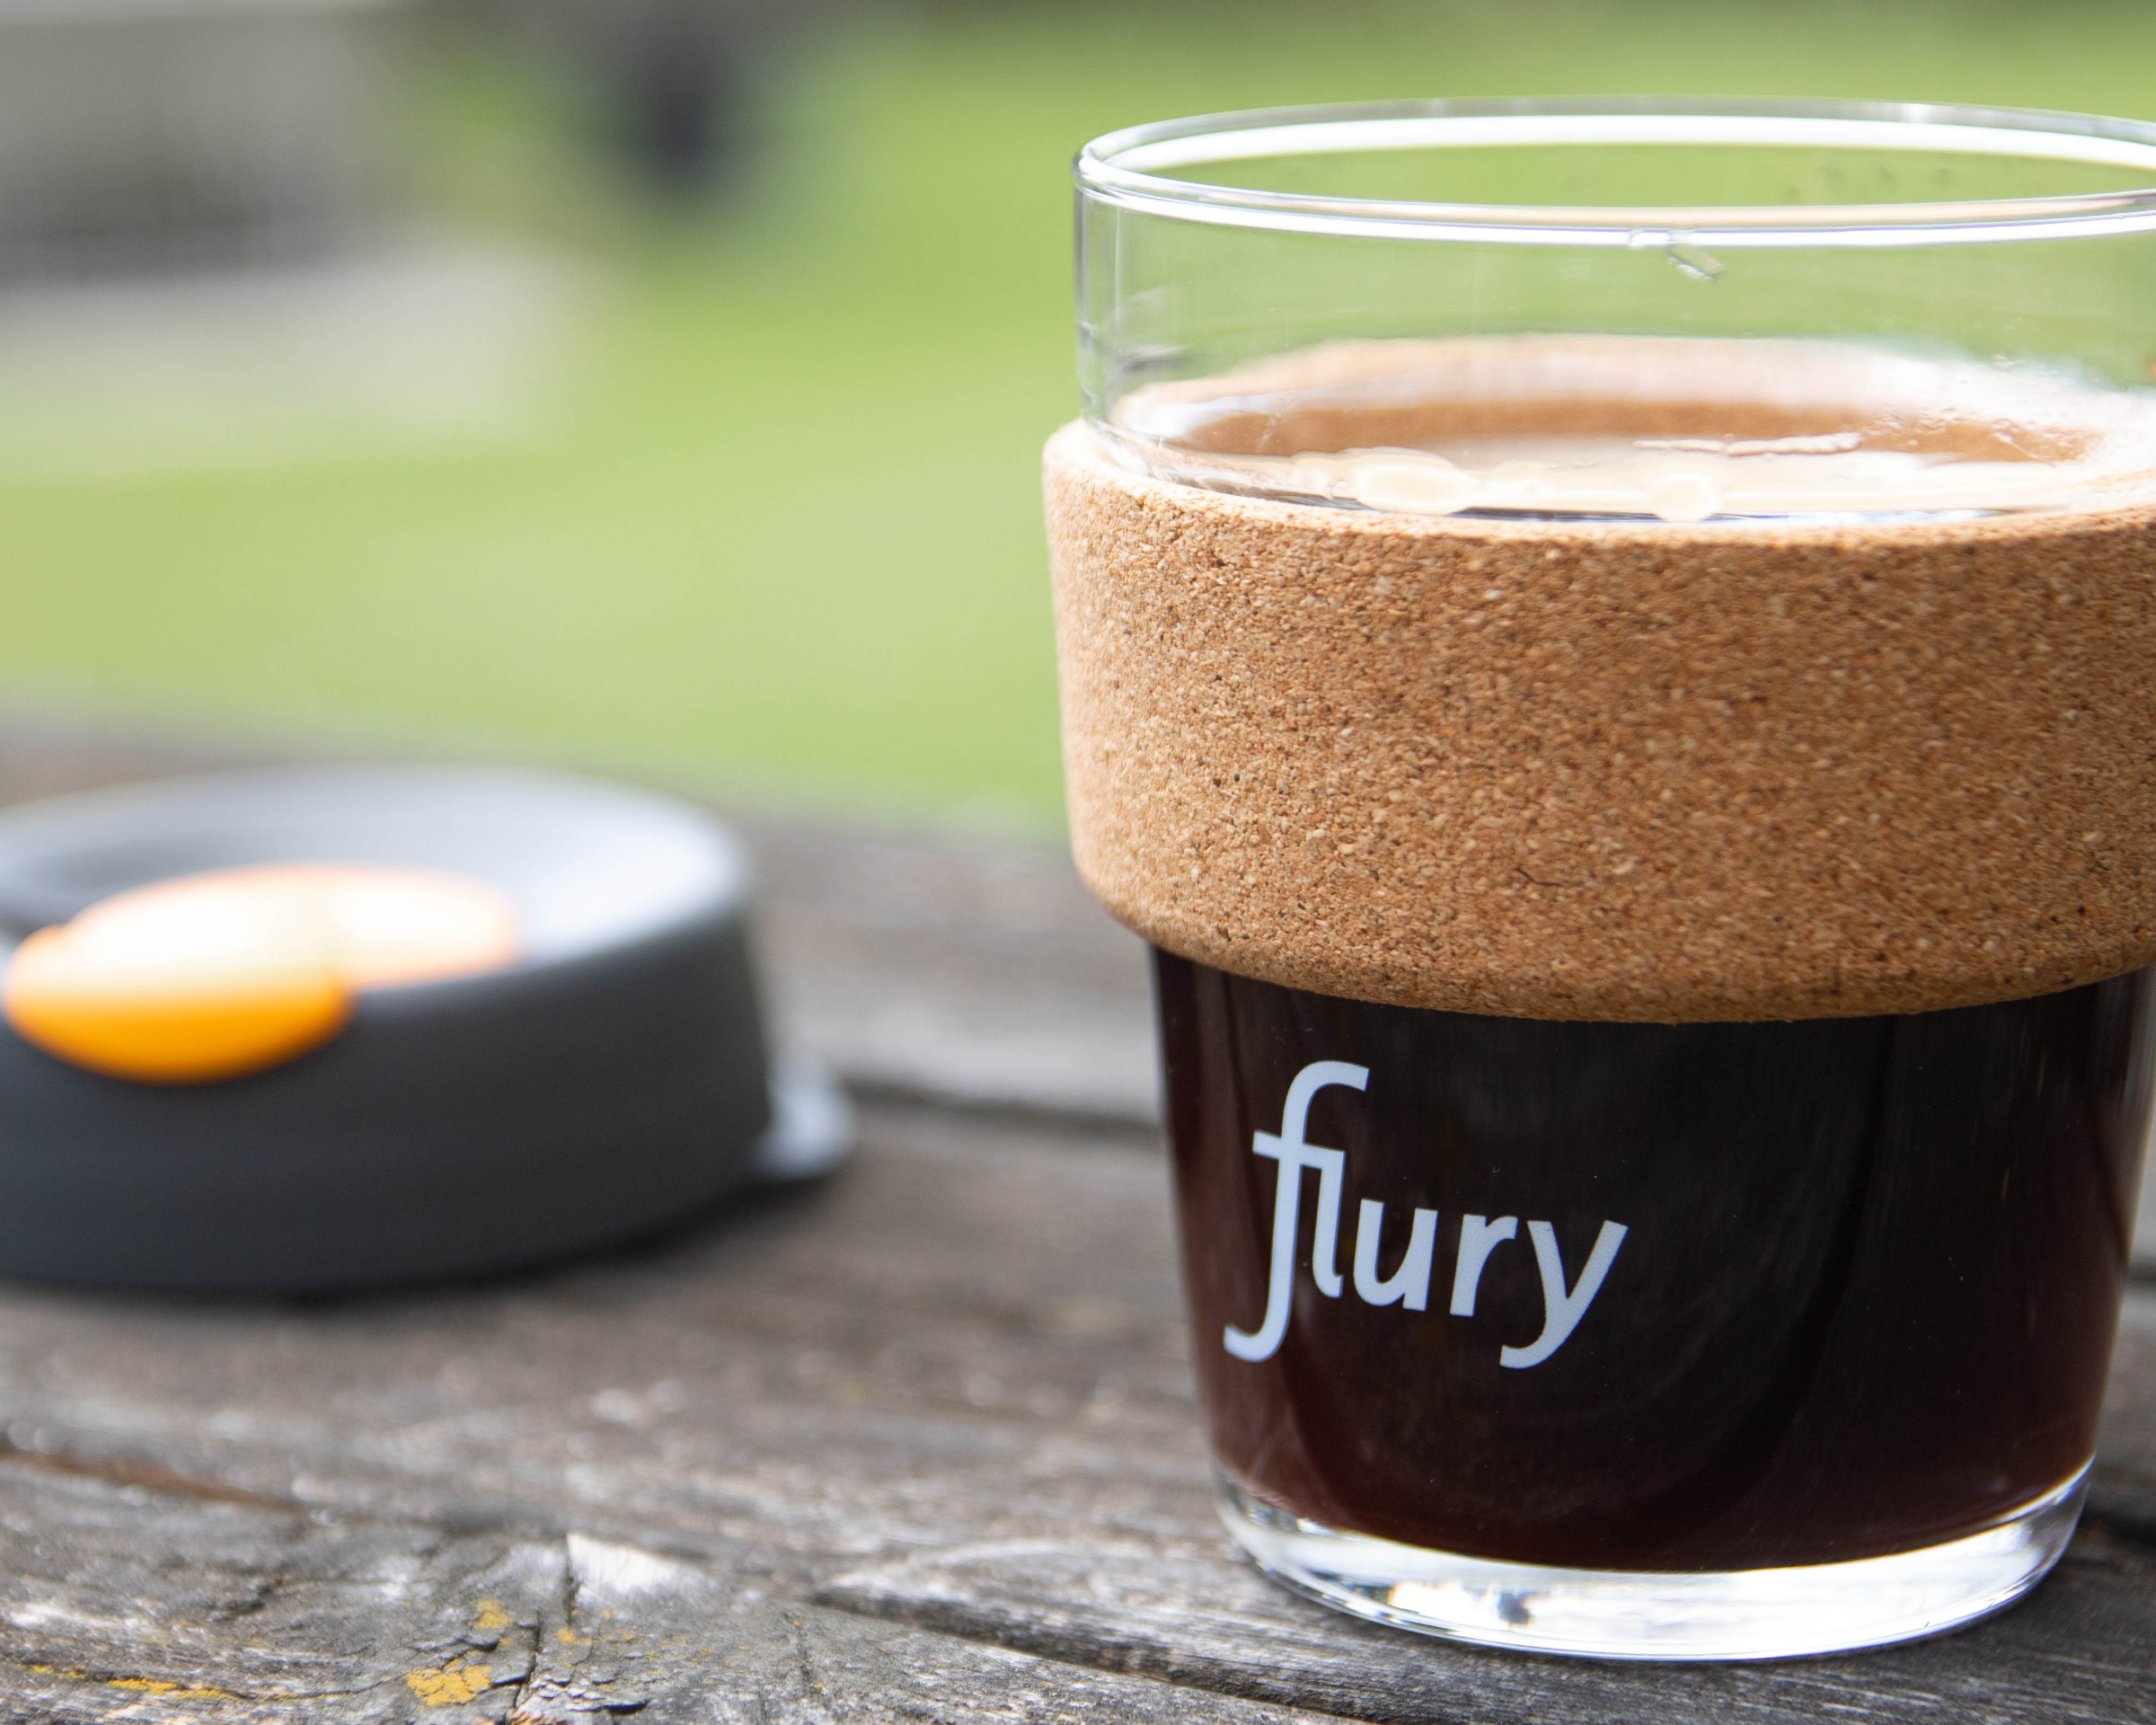 FluryCup aus Glas gefüllt mit frischem Kaffee steht auf einem Holztisch.